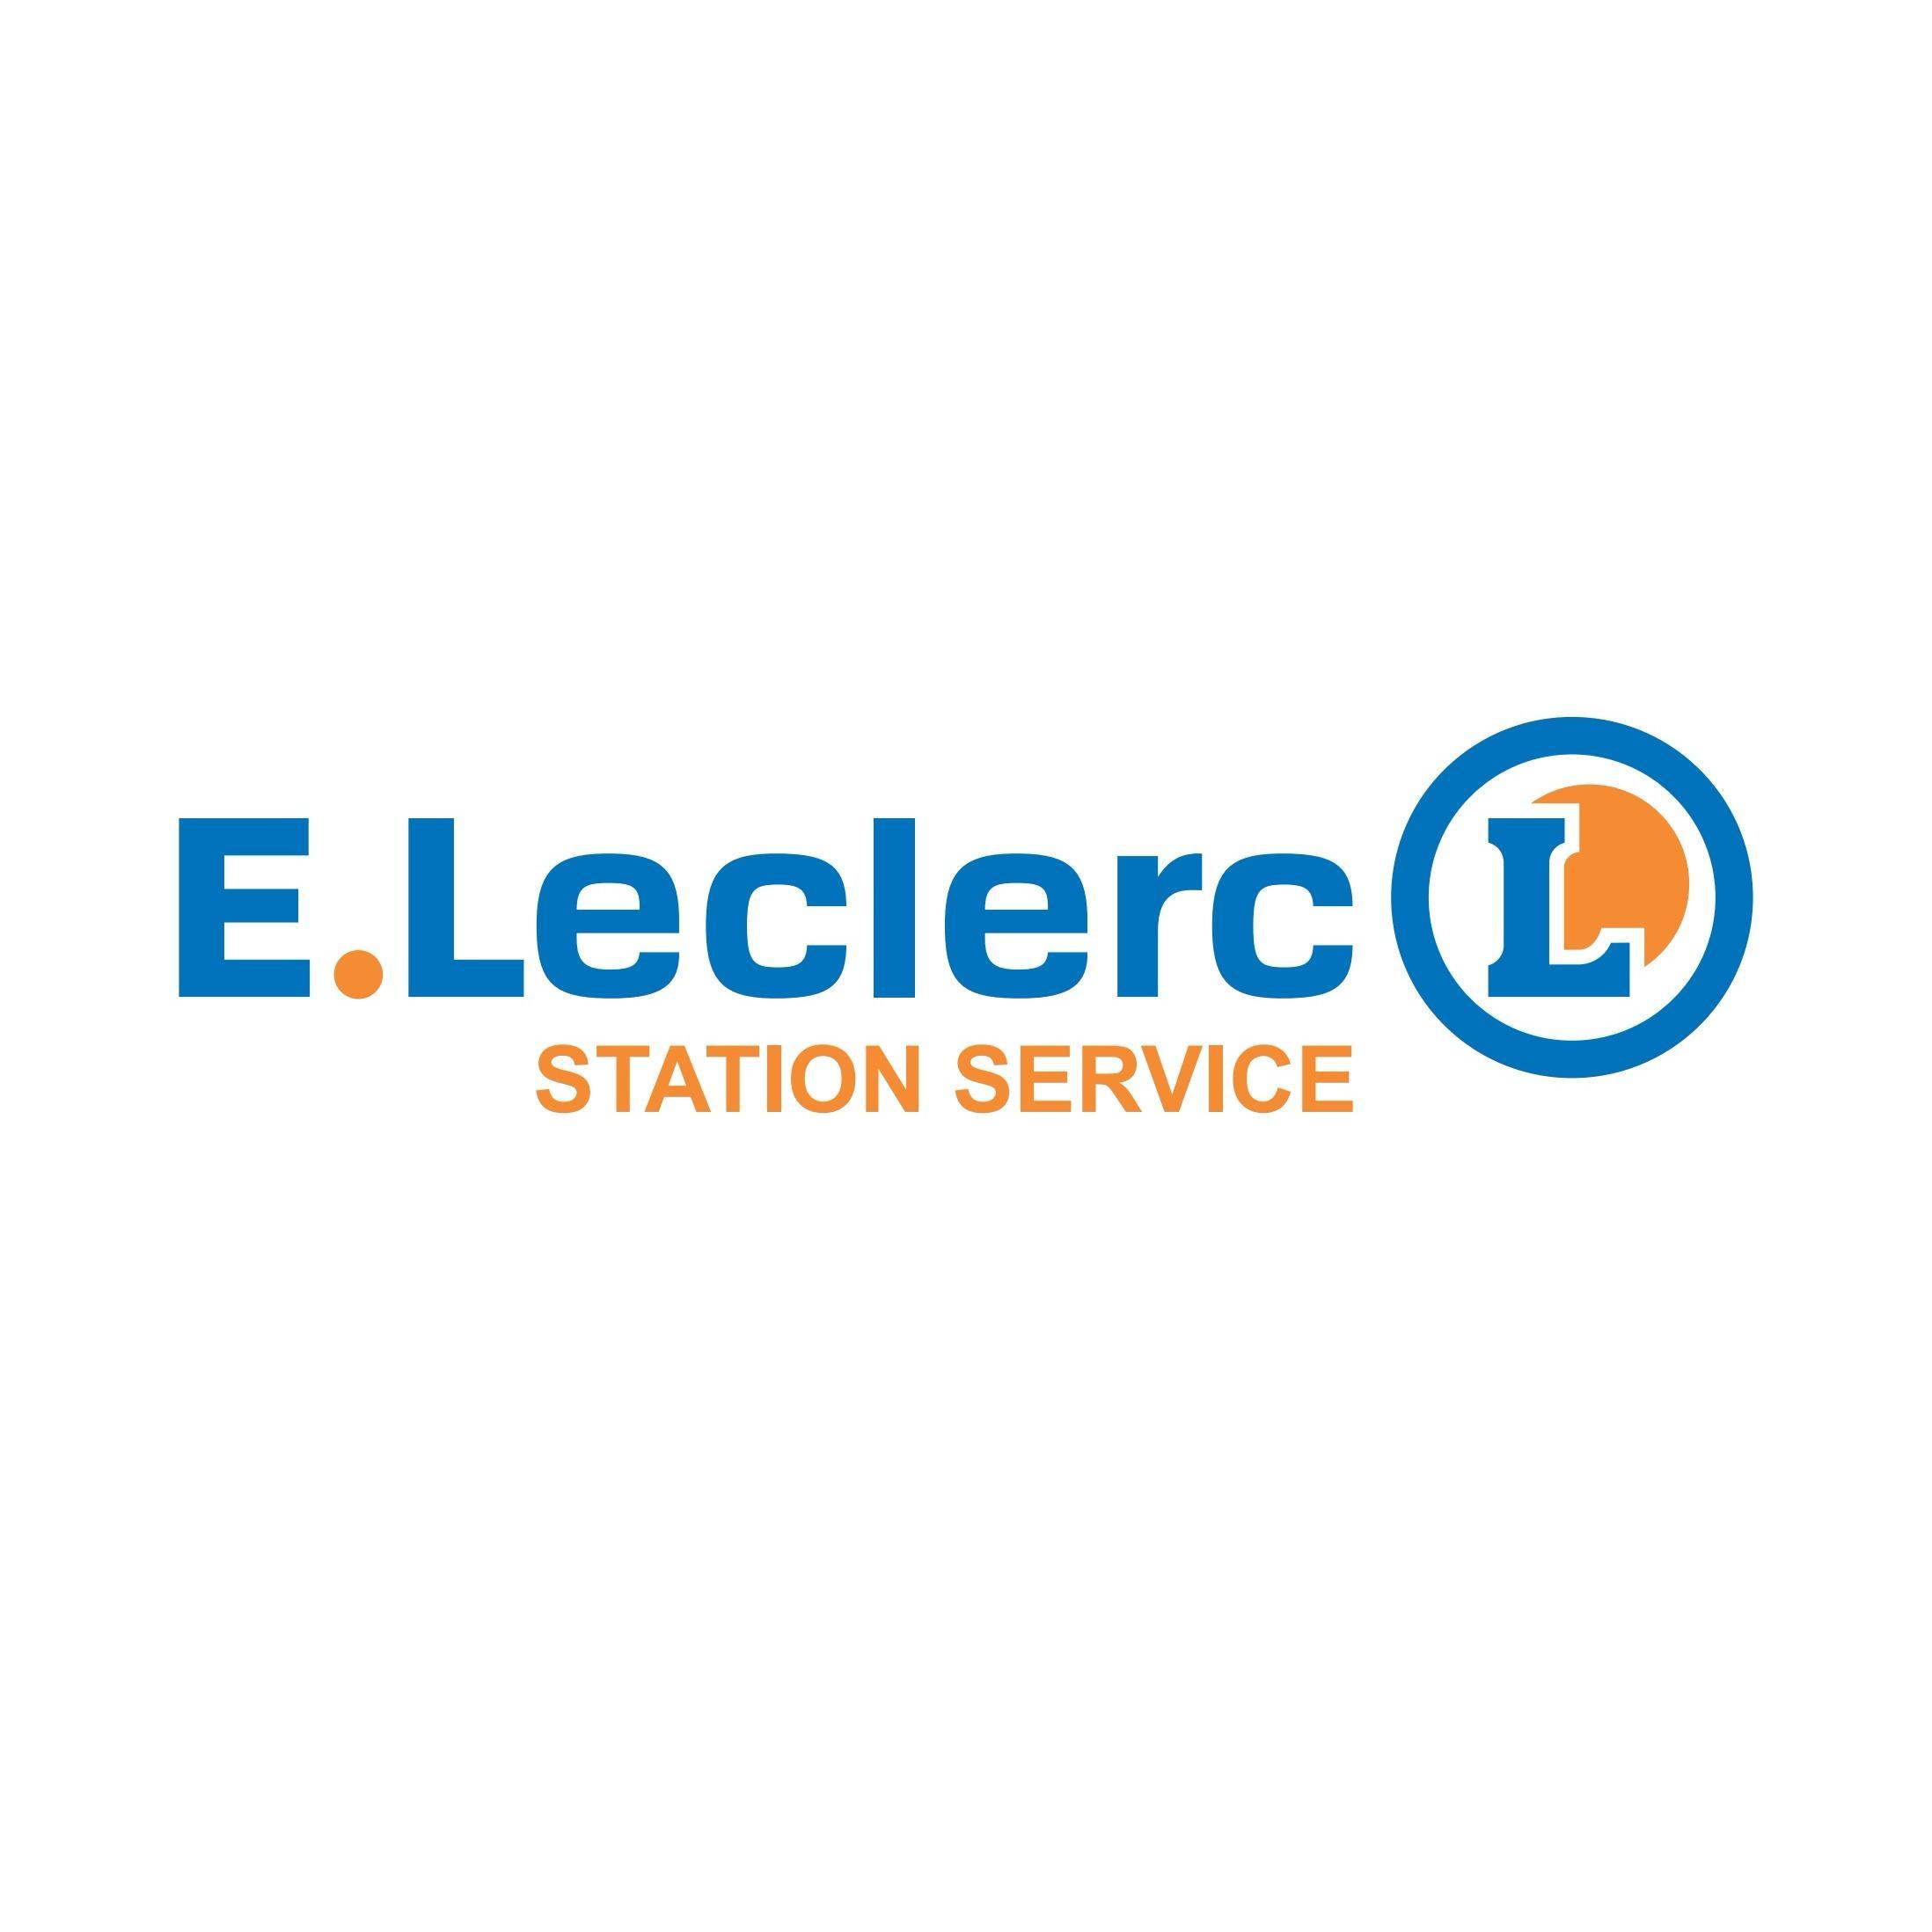 E.leclerc Station Service La Souterraine